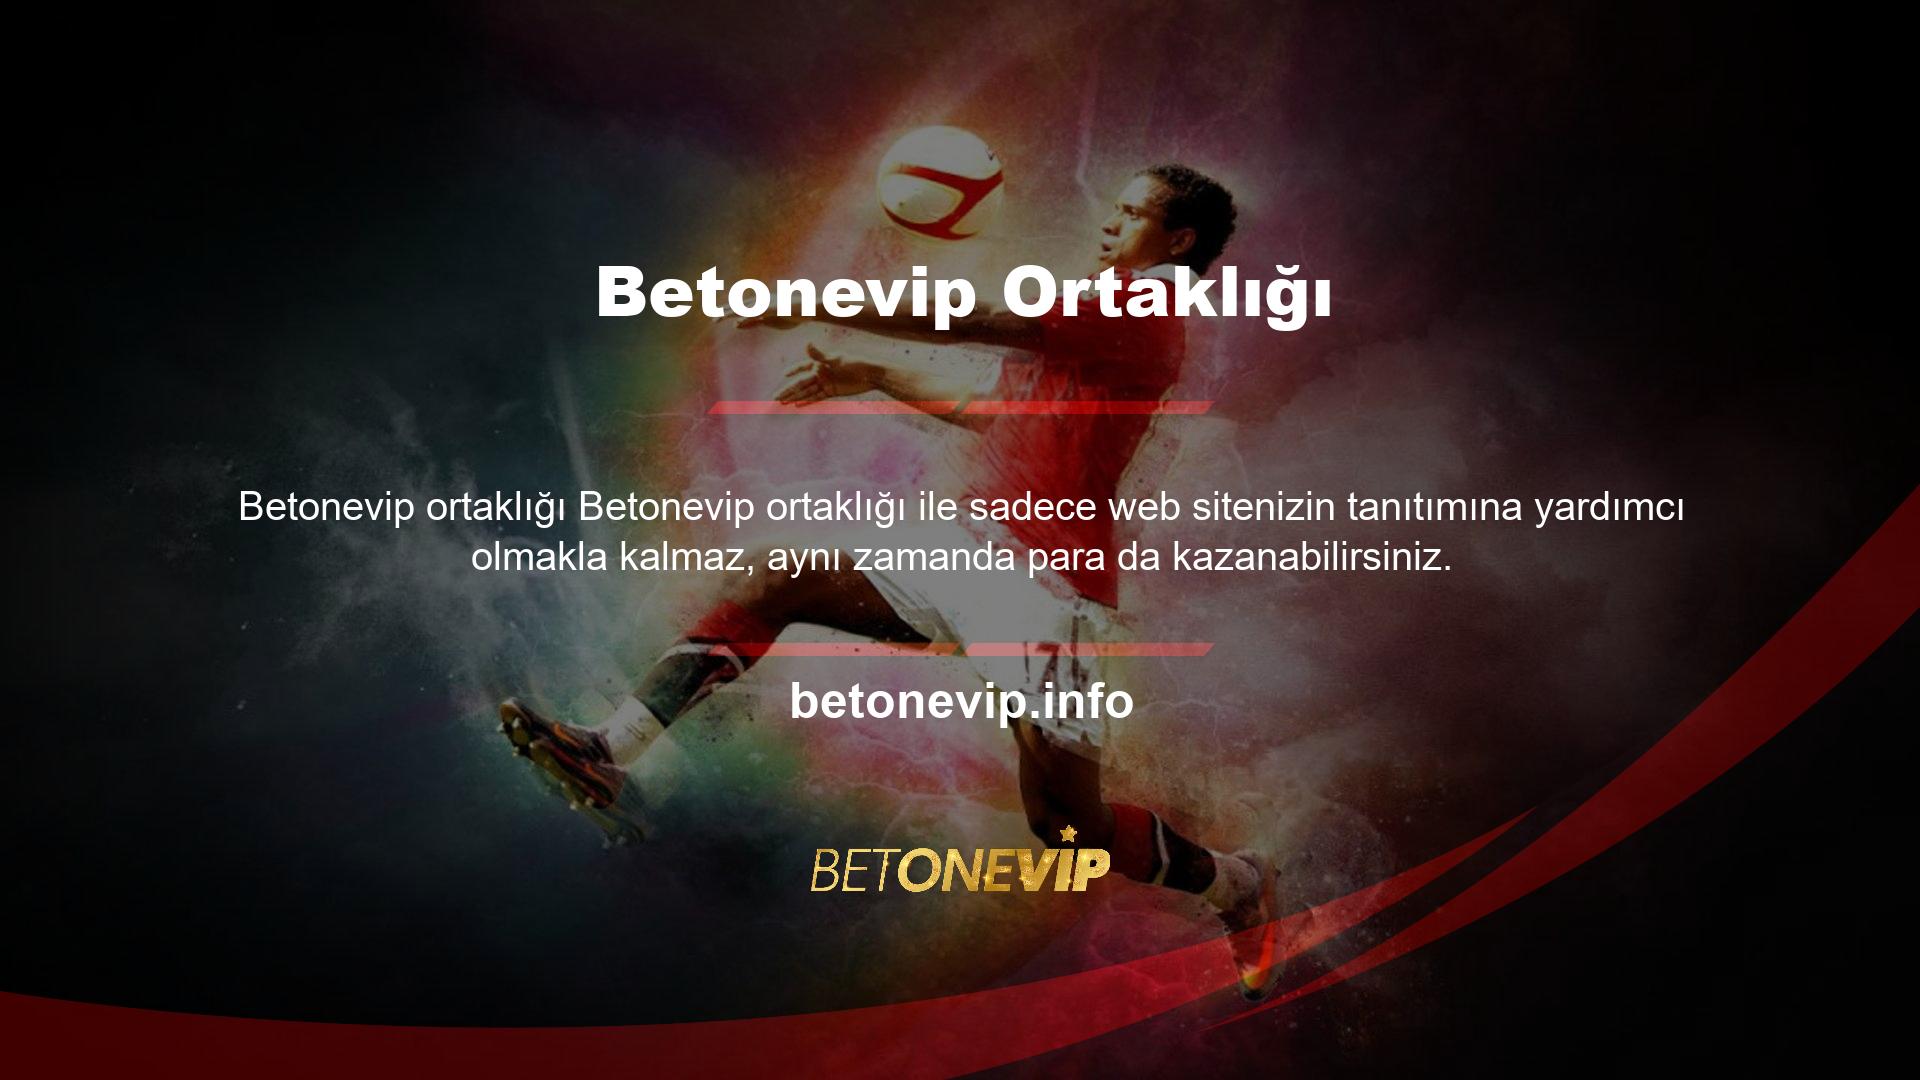 Genellikle Betonevip ile partner olmak isteyenler web sitelerinin detaylı platformlarda tanıtımını yapmakla sorumludurlar